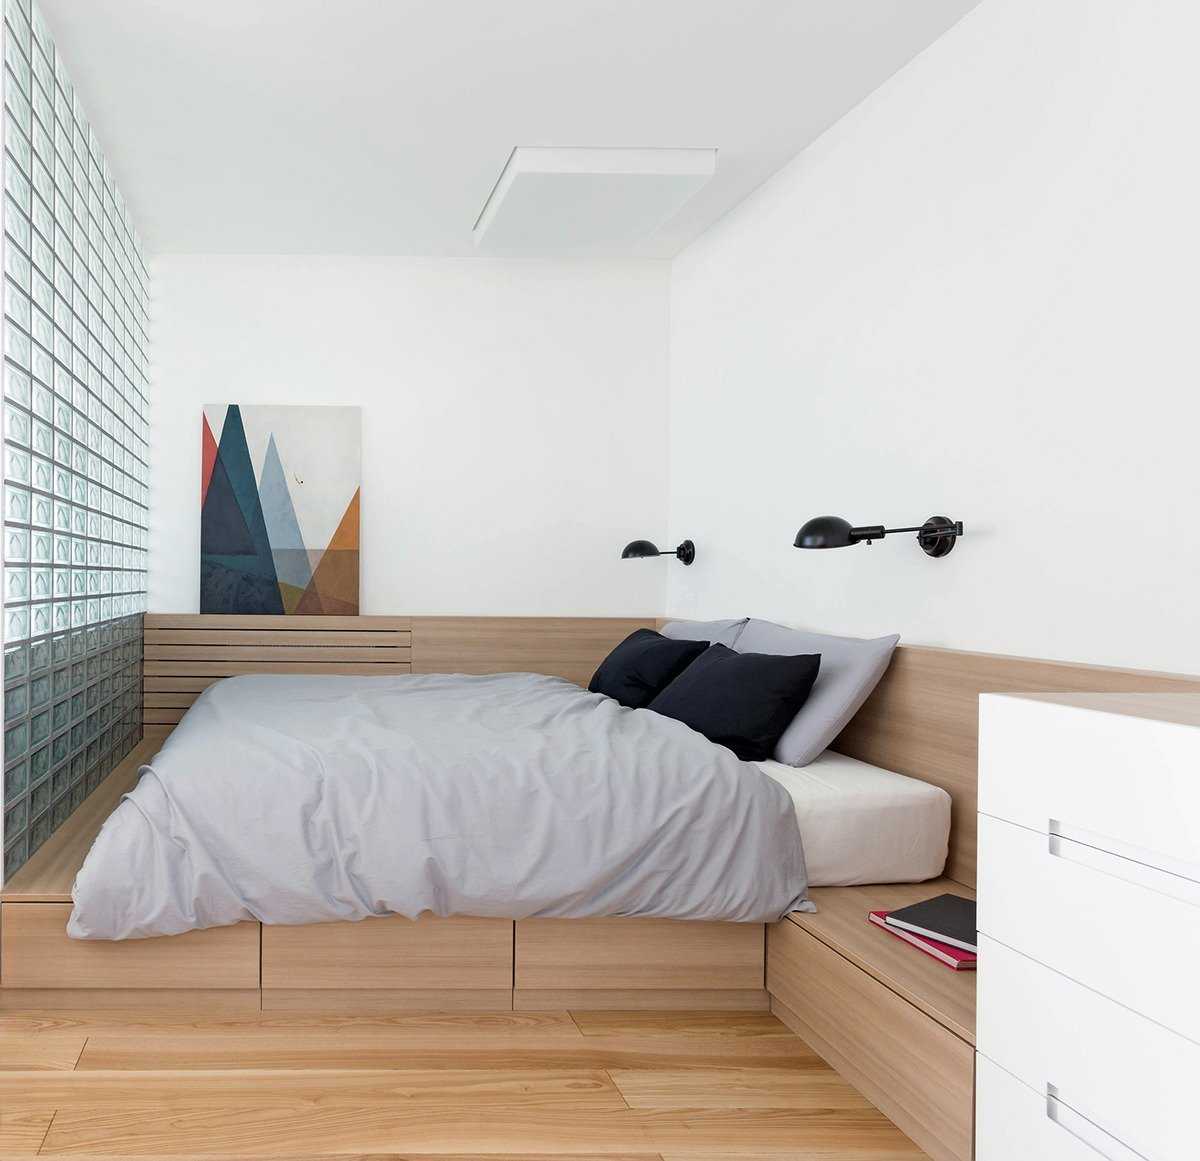 12 полезных идей, как использовать угол в маленькой спальне по максимуму